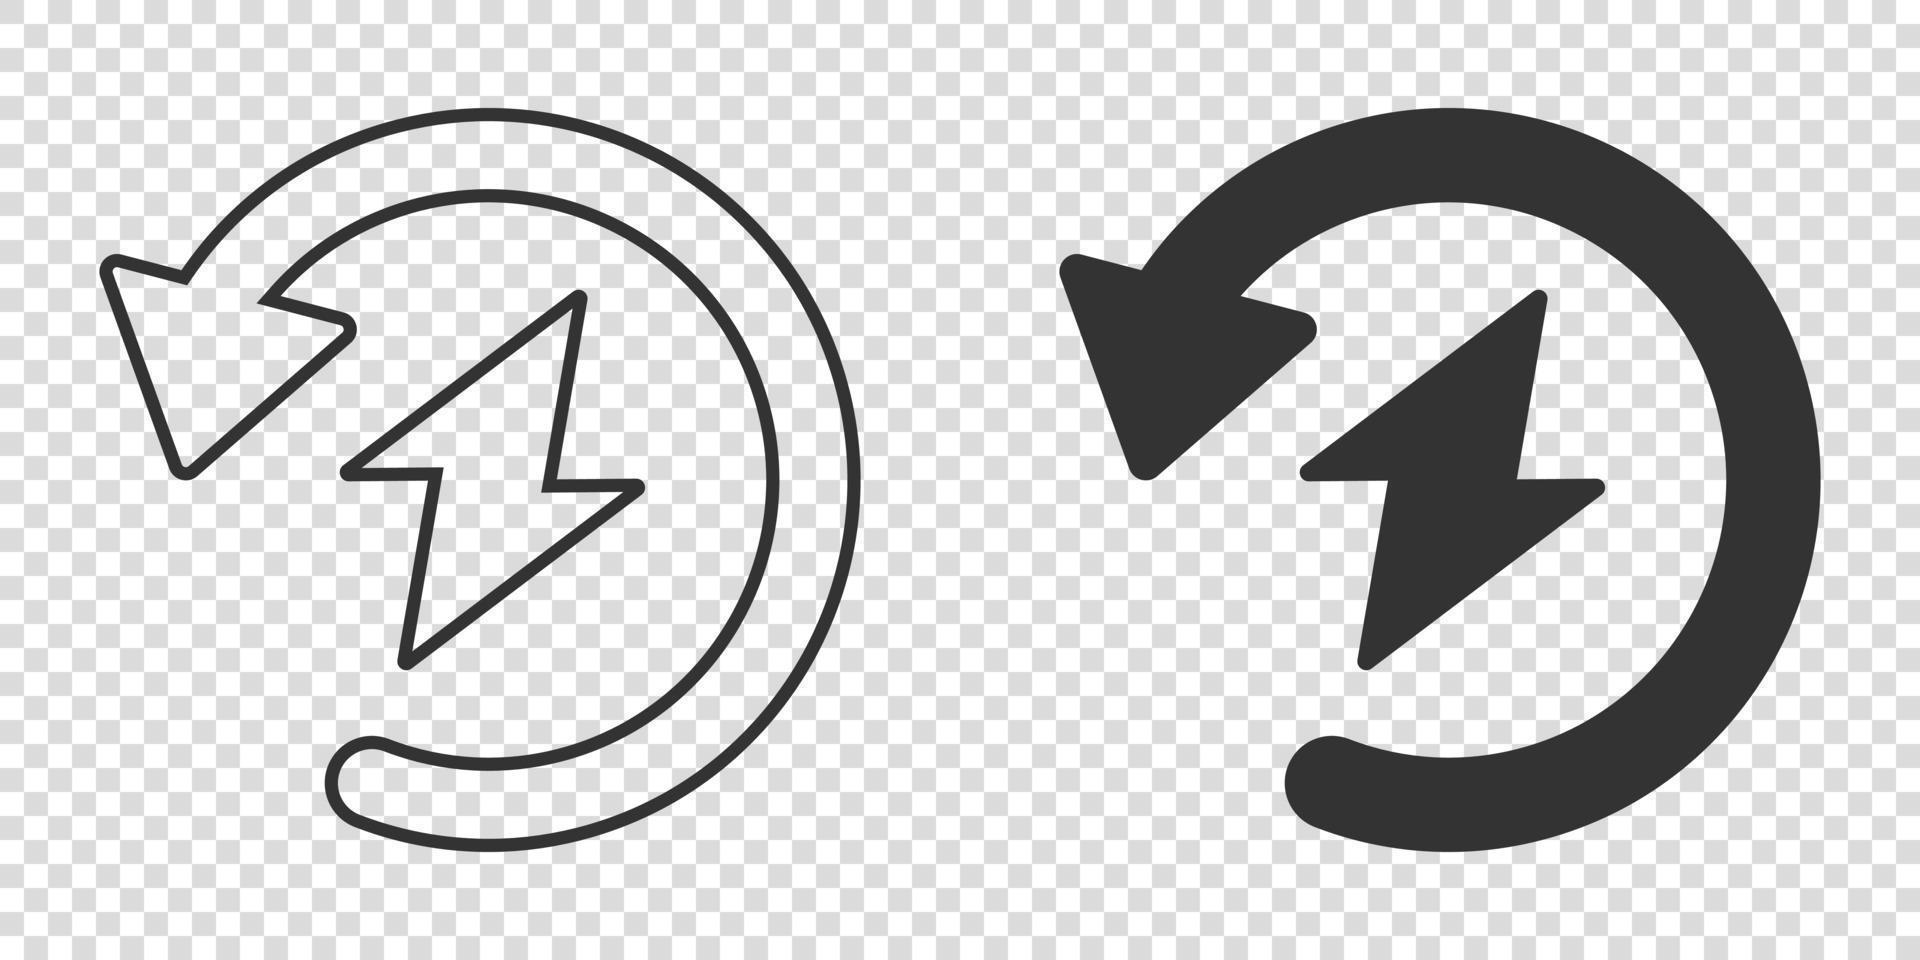 ícone de recarga de energia em estilo simples. ilustração em vetor tensão e seta em fundo branco isolado. conceito de negócio de sinal elétrico.